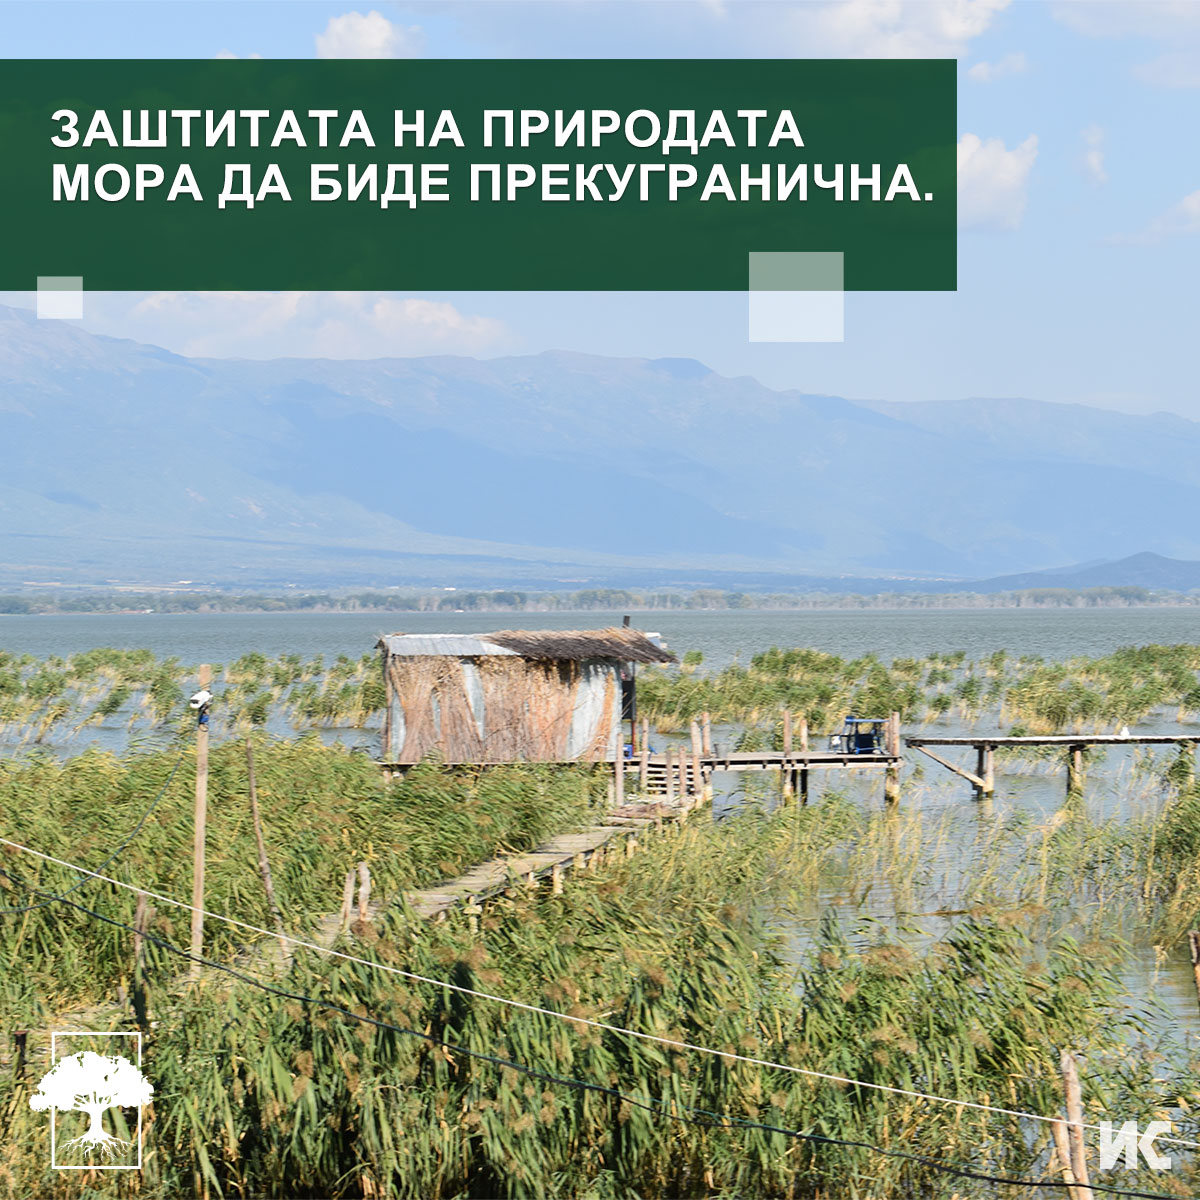 Фотогафија од Дојранско Езеро, со текст: „Заштитата на природата мора да биде пркугранична.